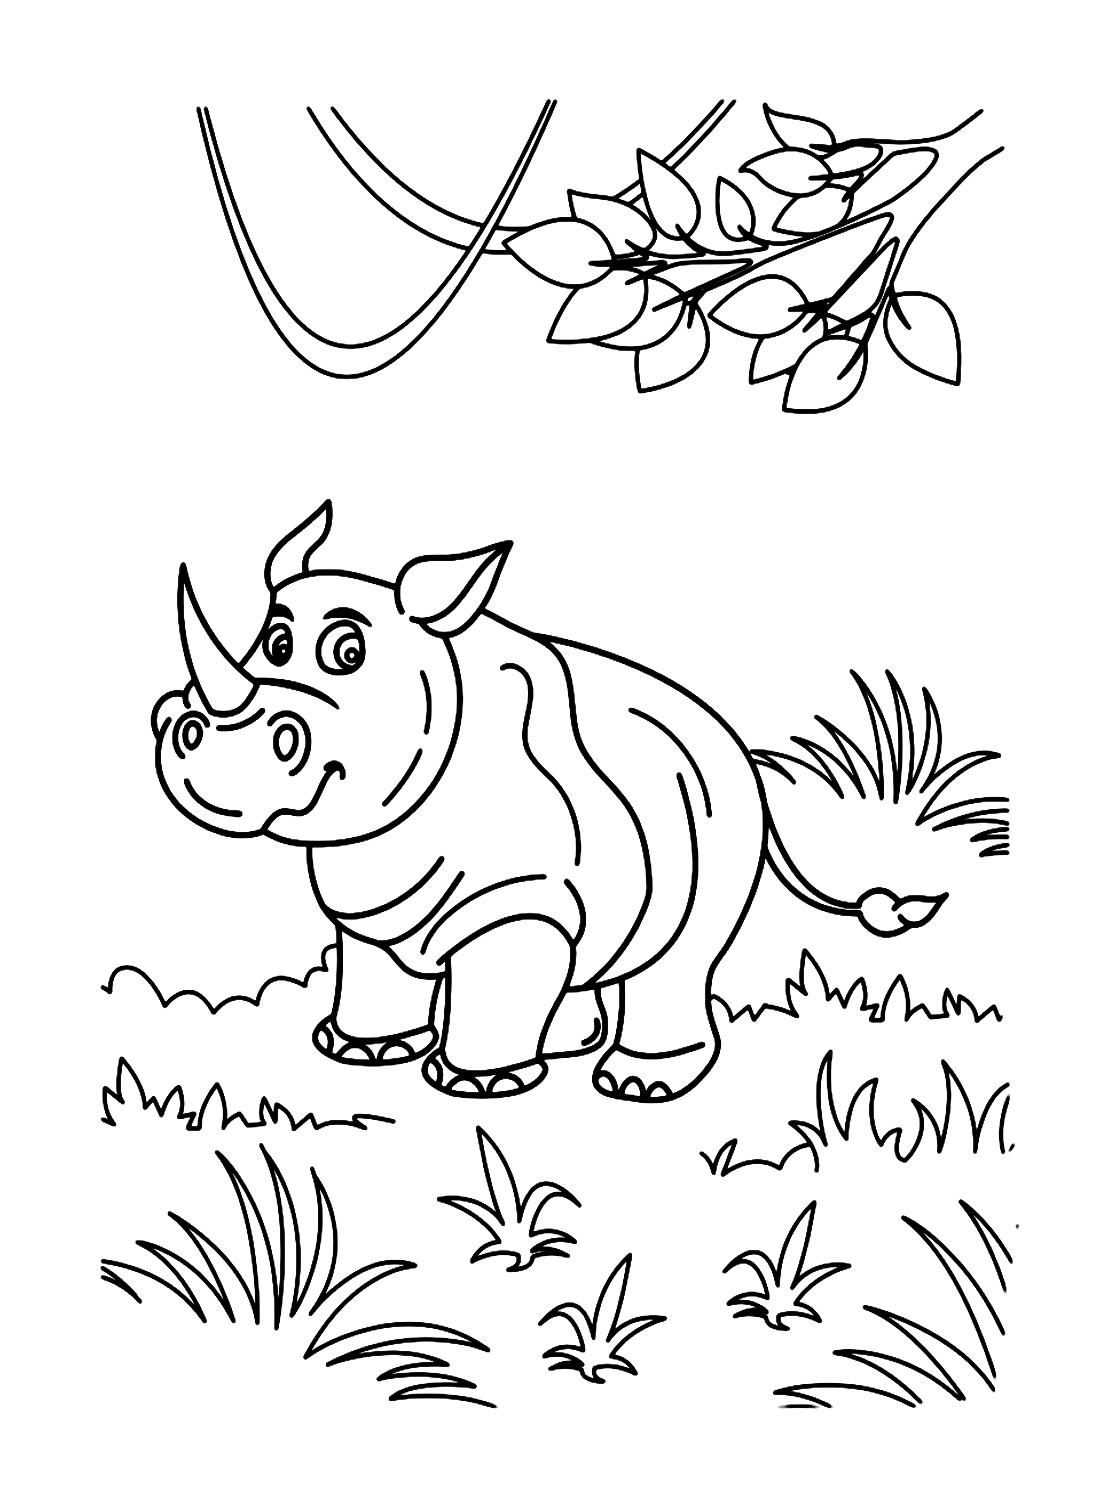 وحيد القرن على العشب من وحيد القرن